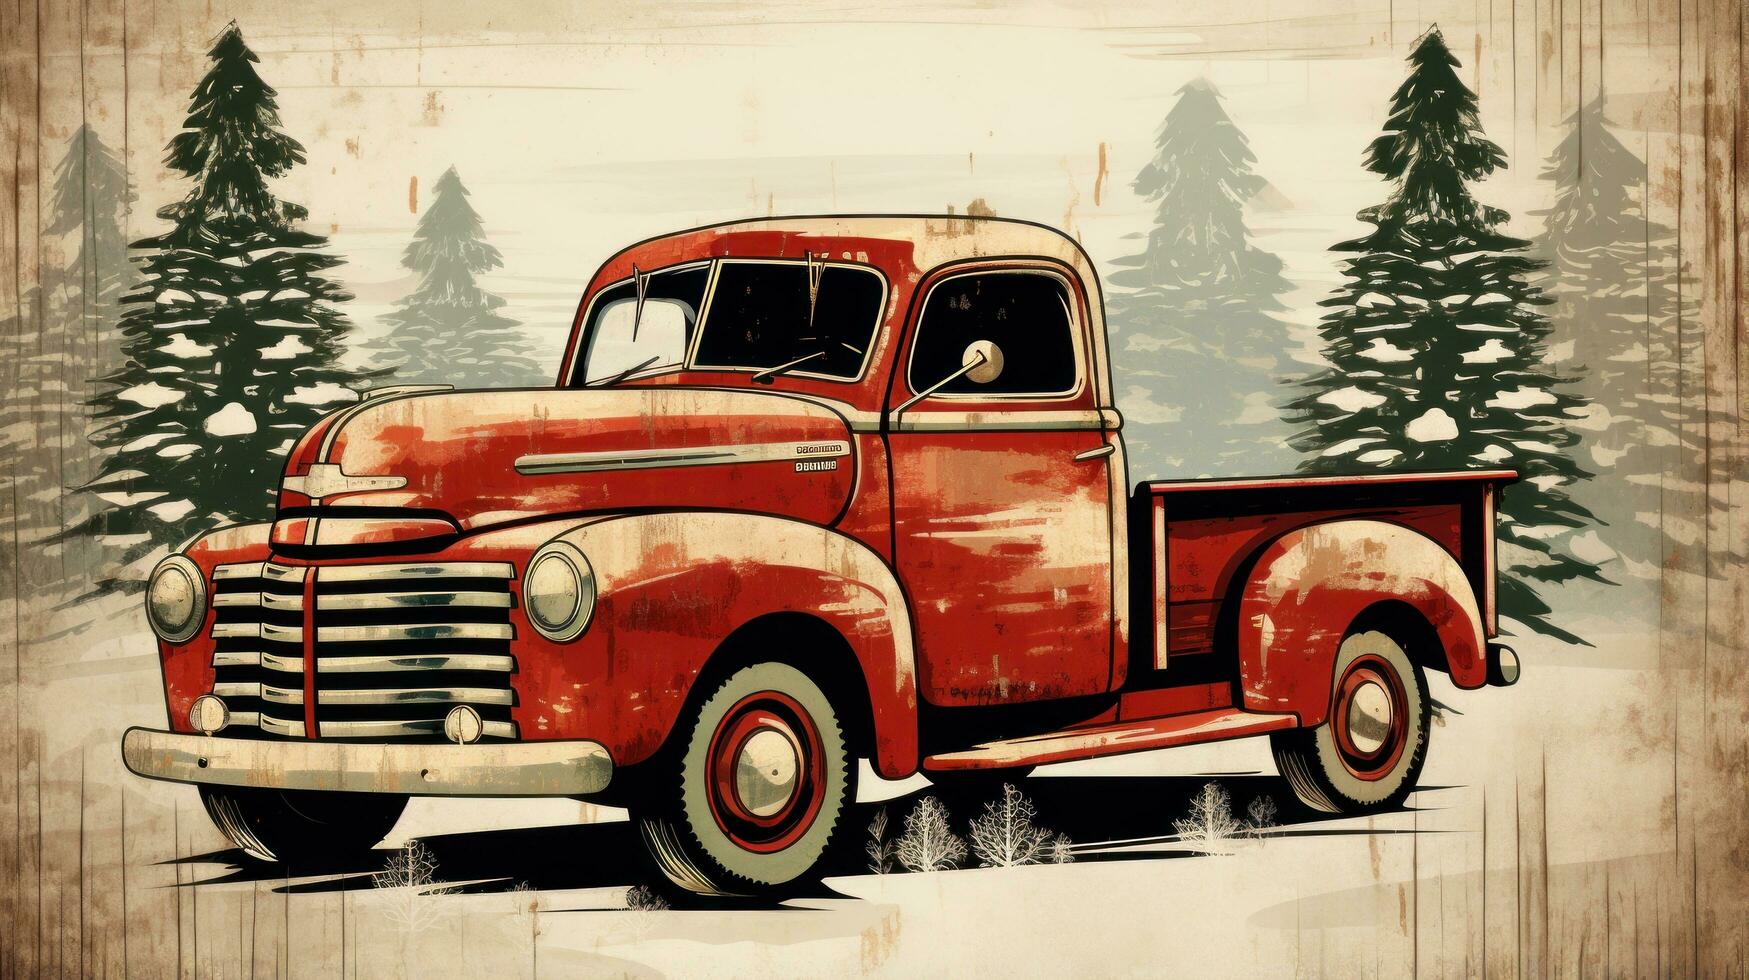 rústico de madeira placa com alegre Natal e vermelho caminhão ilustração foto